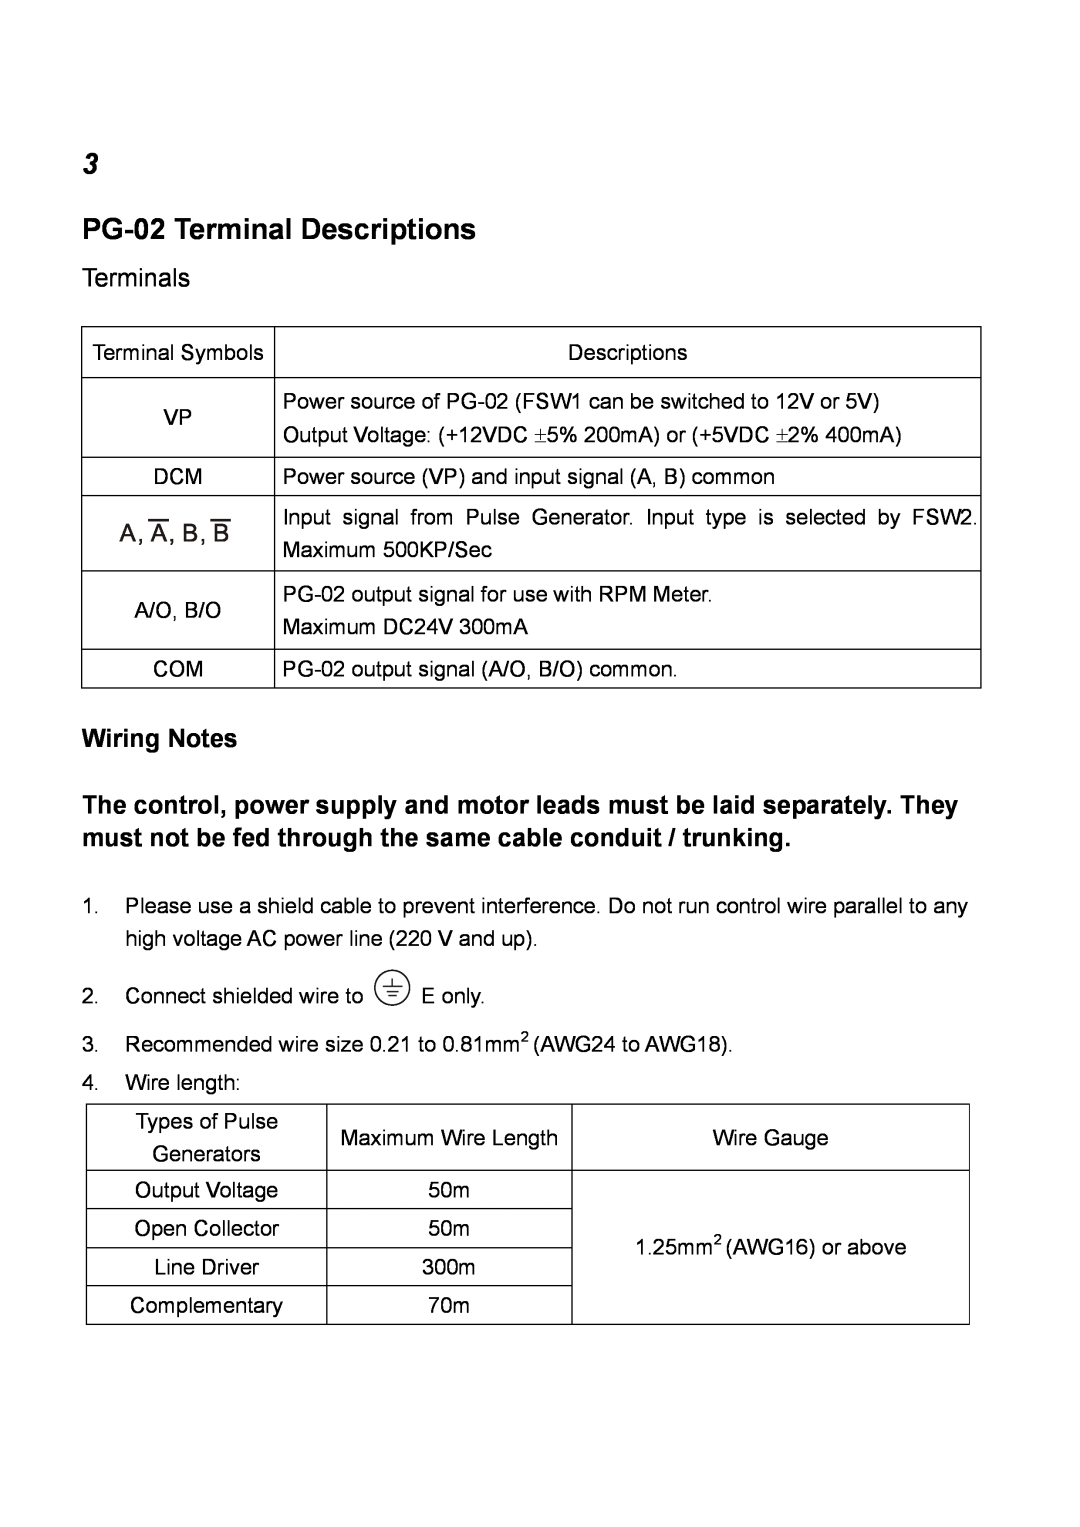 Delta Electronics manual PG-02 Terminal Descriptions, Terminals, Wiring Notes 